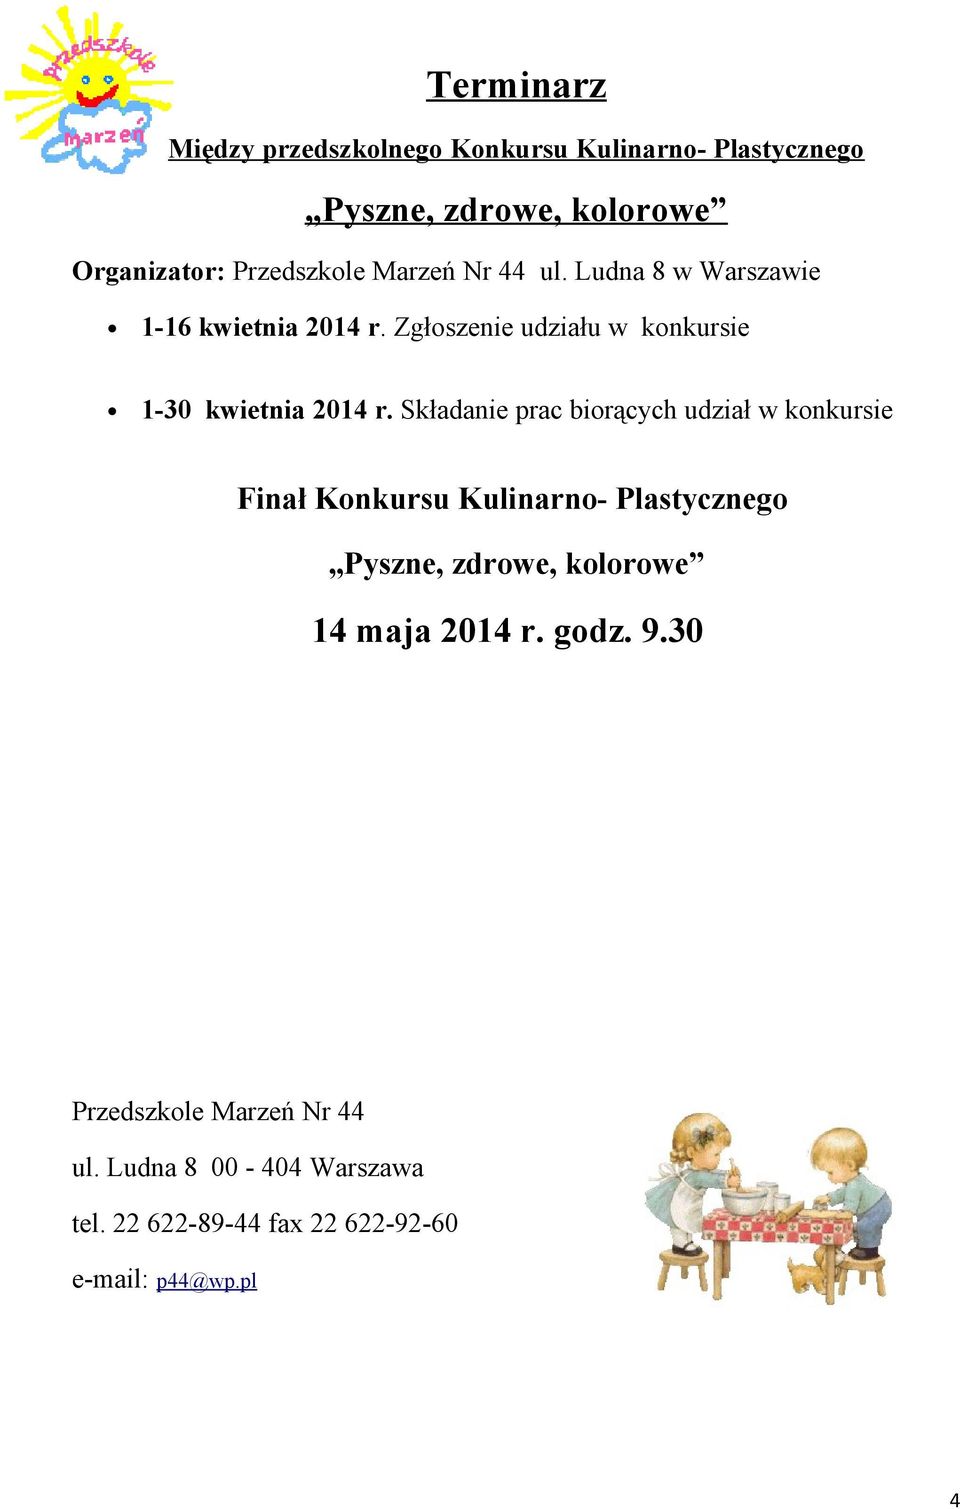 Składanie prac biorących udział w konkursie Finał Konkursu Kulinarno- Plastycznego Pyszne, zdrowe, kolorowe 14 maja